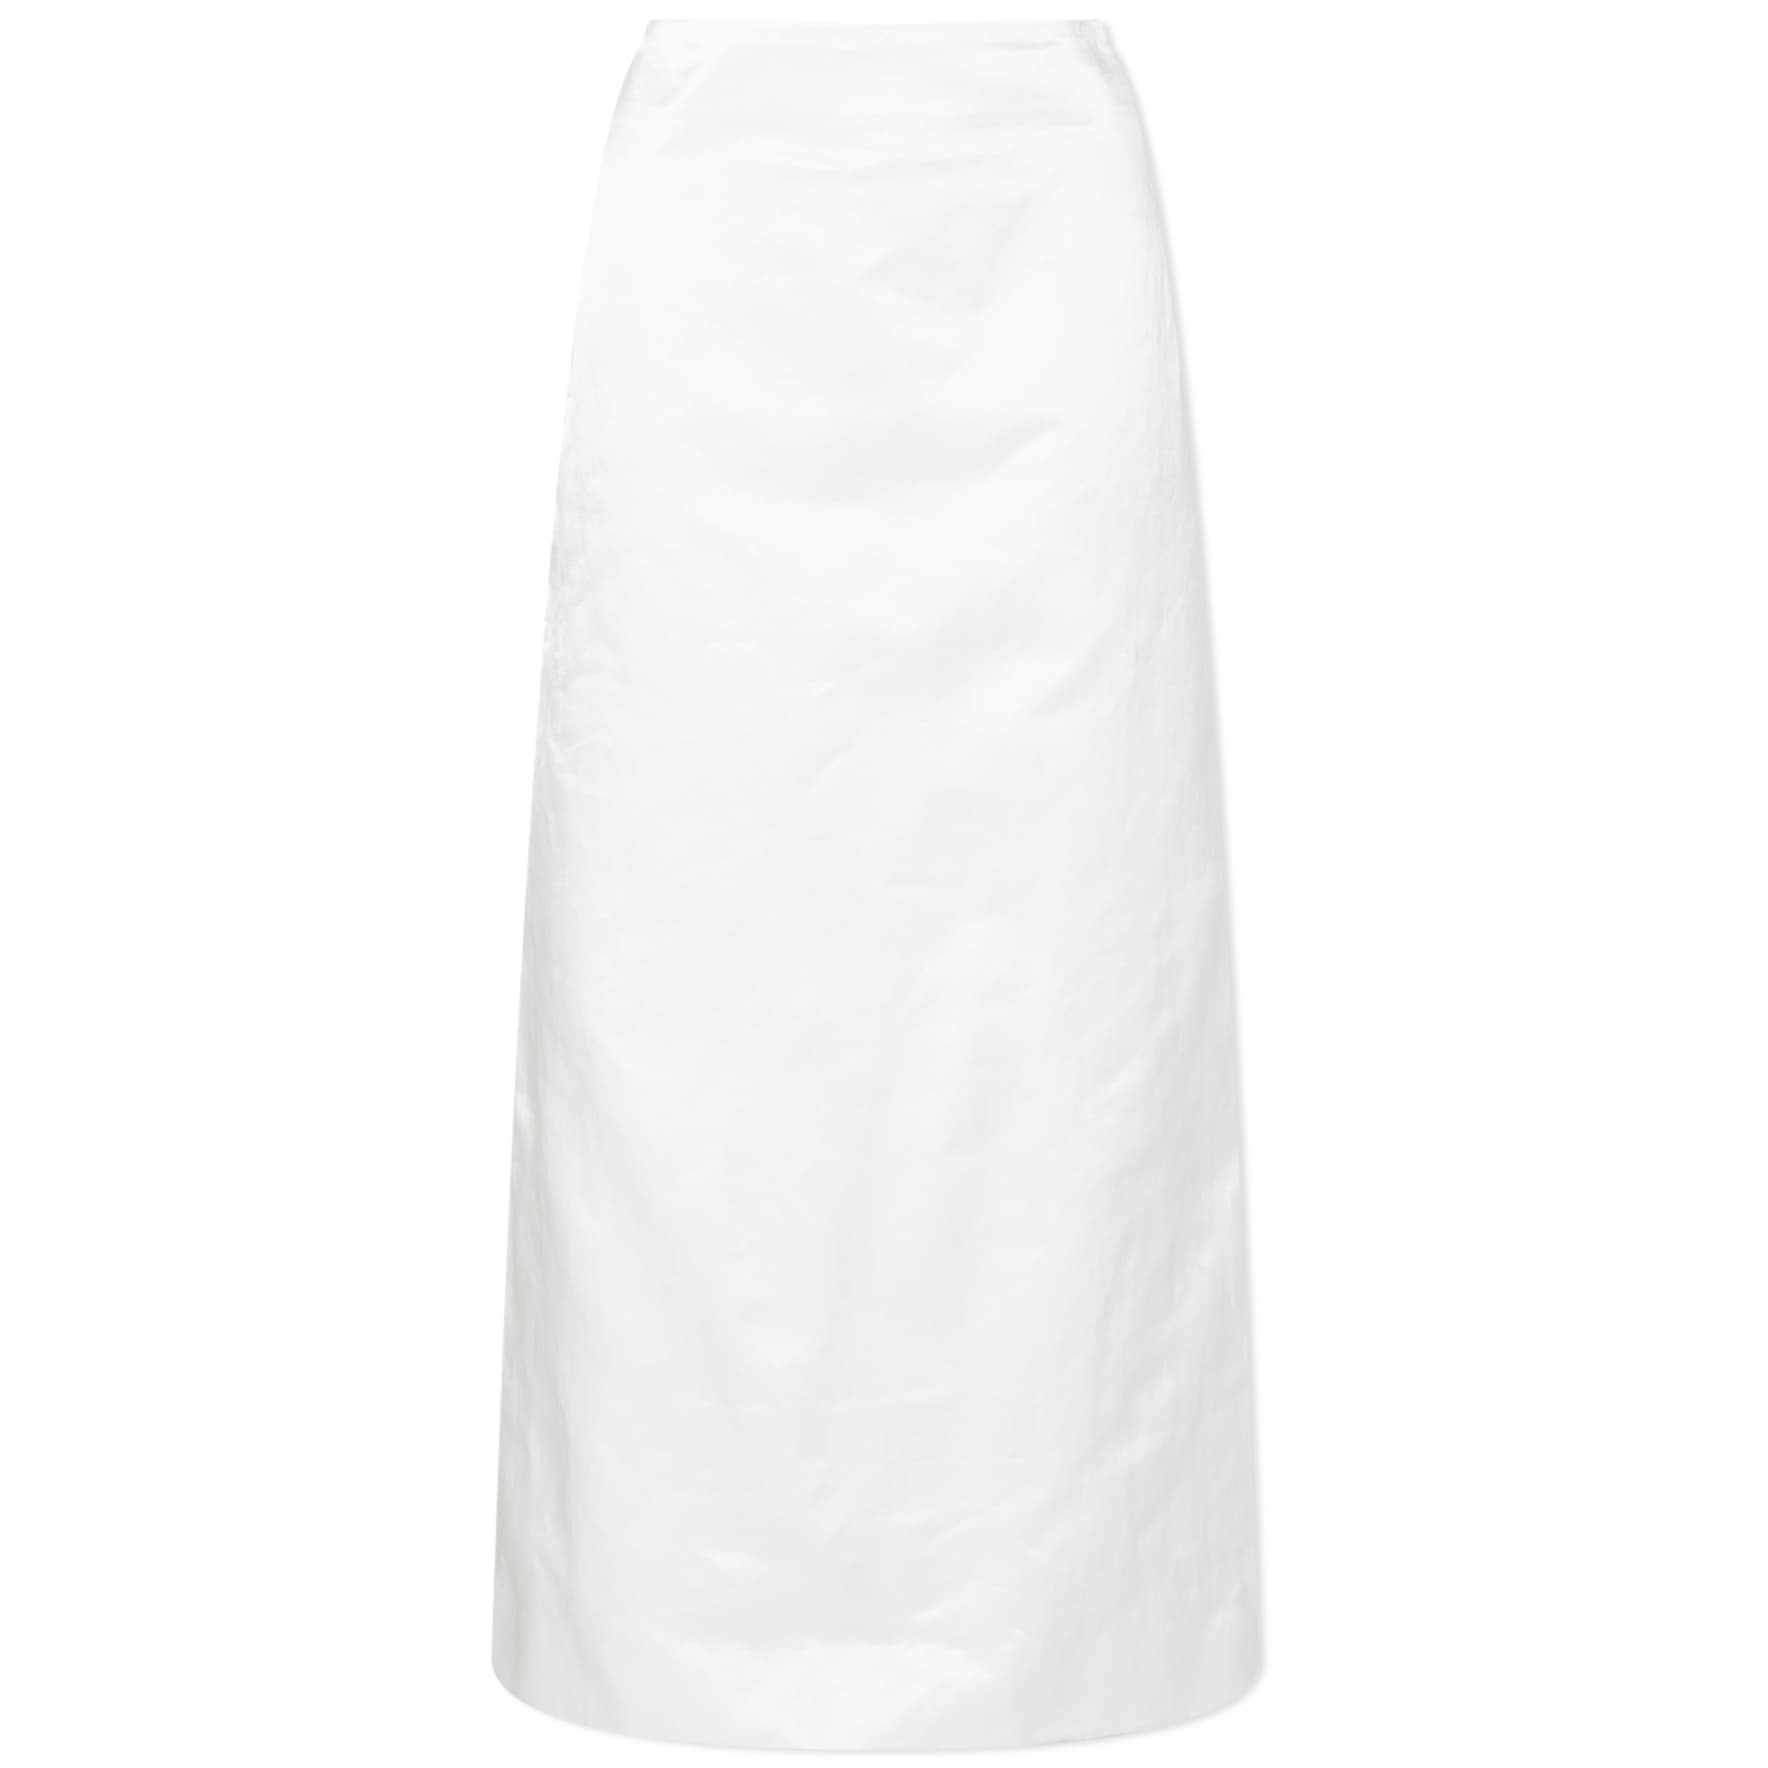 Юбка Sportmax Cellula Maxi, белый офисная юбка плотная элегантная юбка теплая универсальная модная трапециевидная макси зимняя длинная юбка с высокой талией